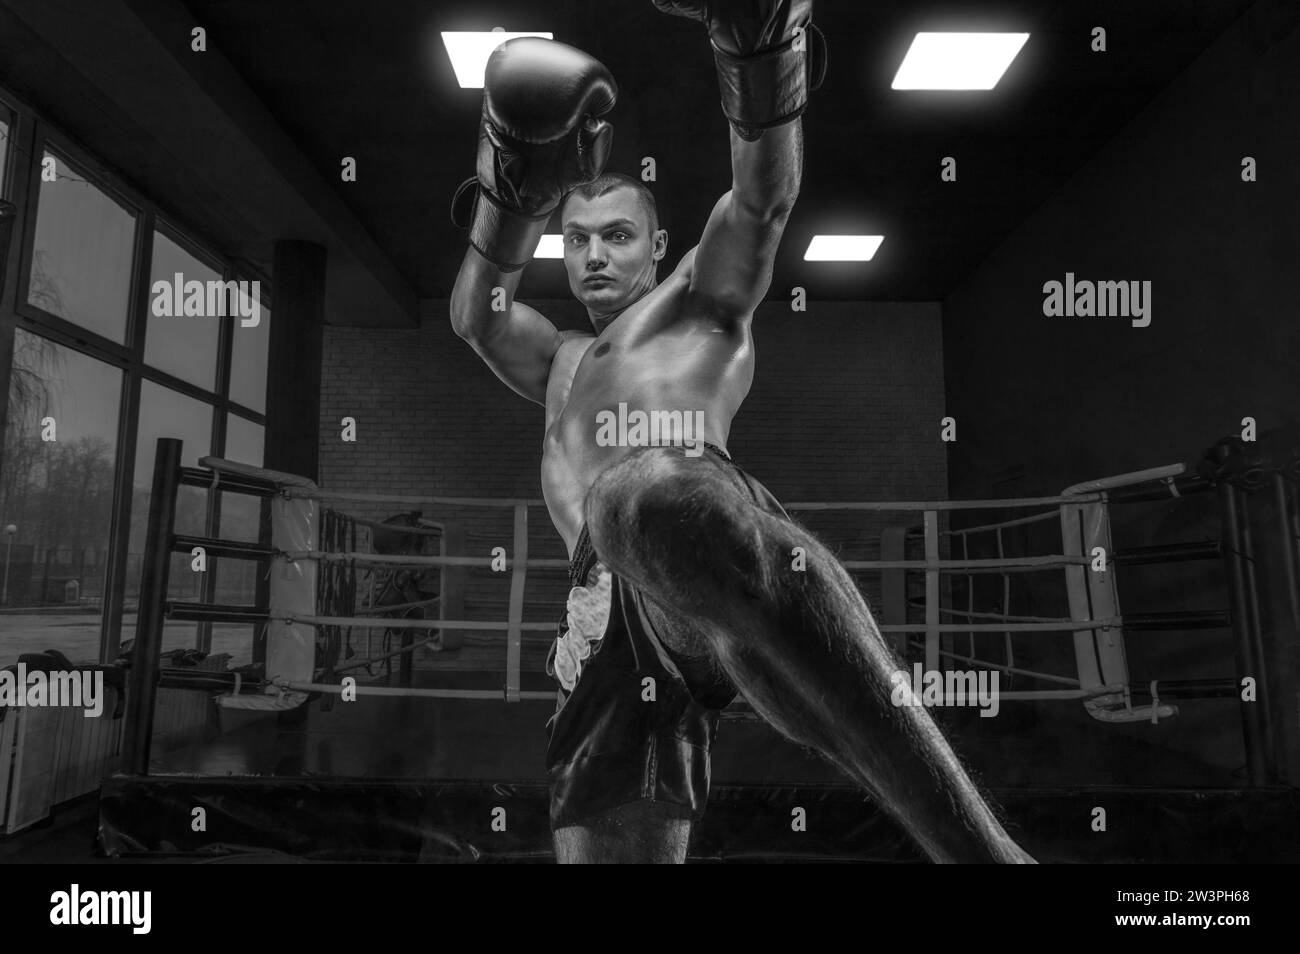 Image d'un kickboxer dans la salle de gym. Coup de pied au genou. Arts martiaux mixtes Concept sportif Banque D'Images